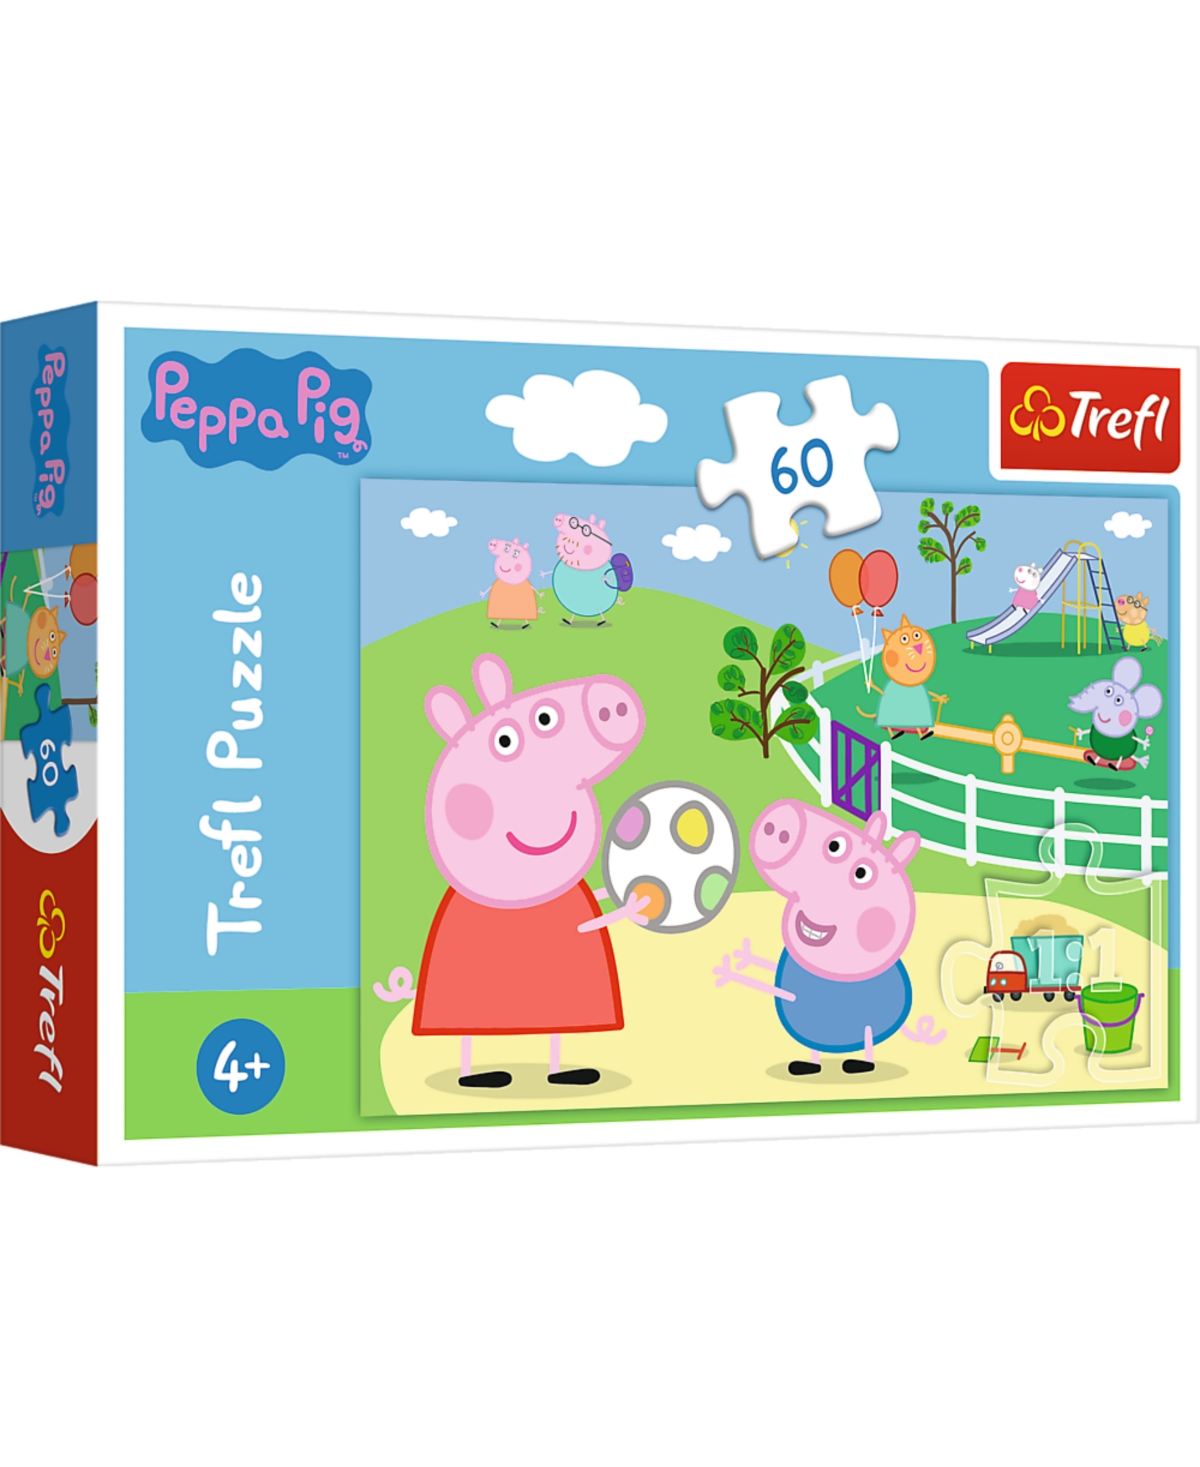 Trefl Kids' Peppa Pig 60 Piece Puzzle In Multi